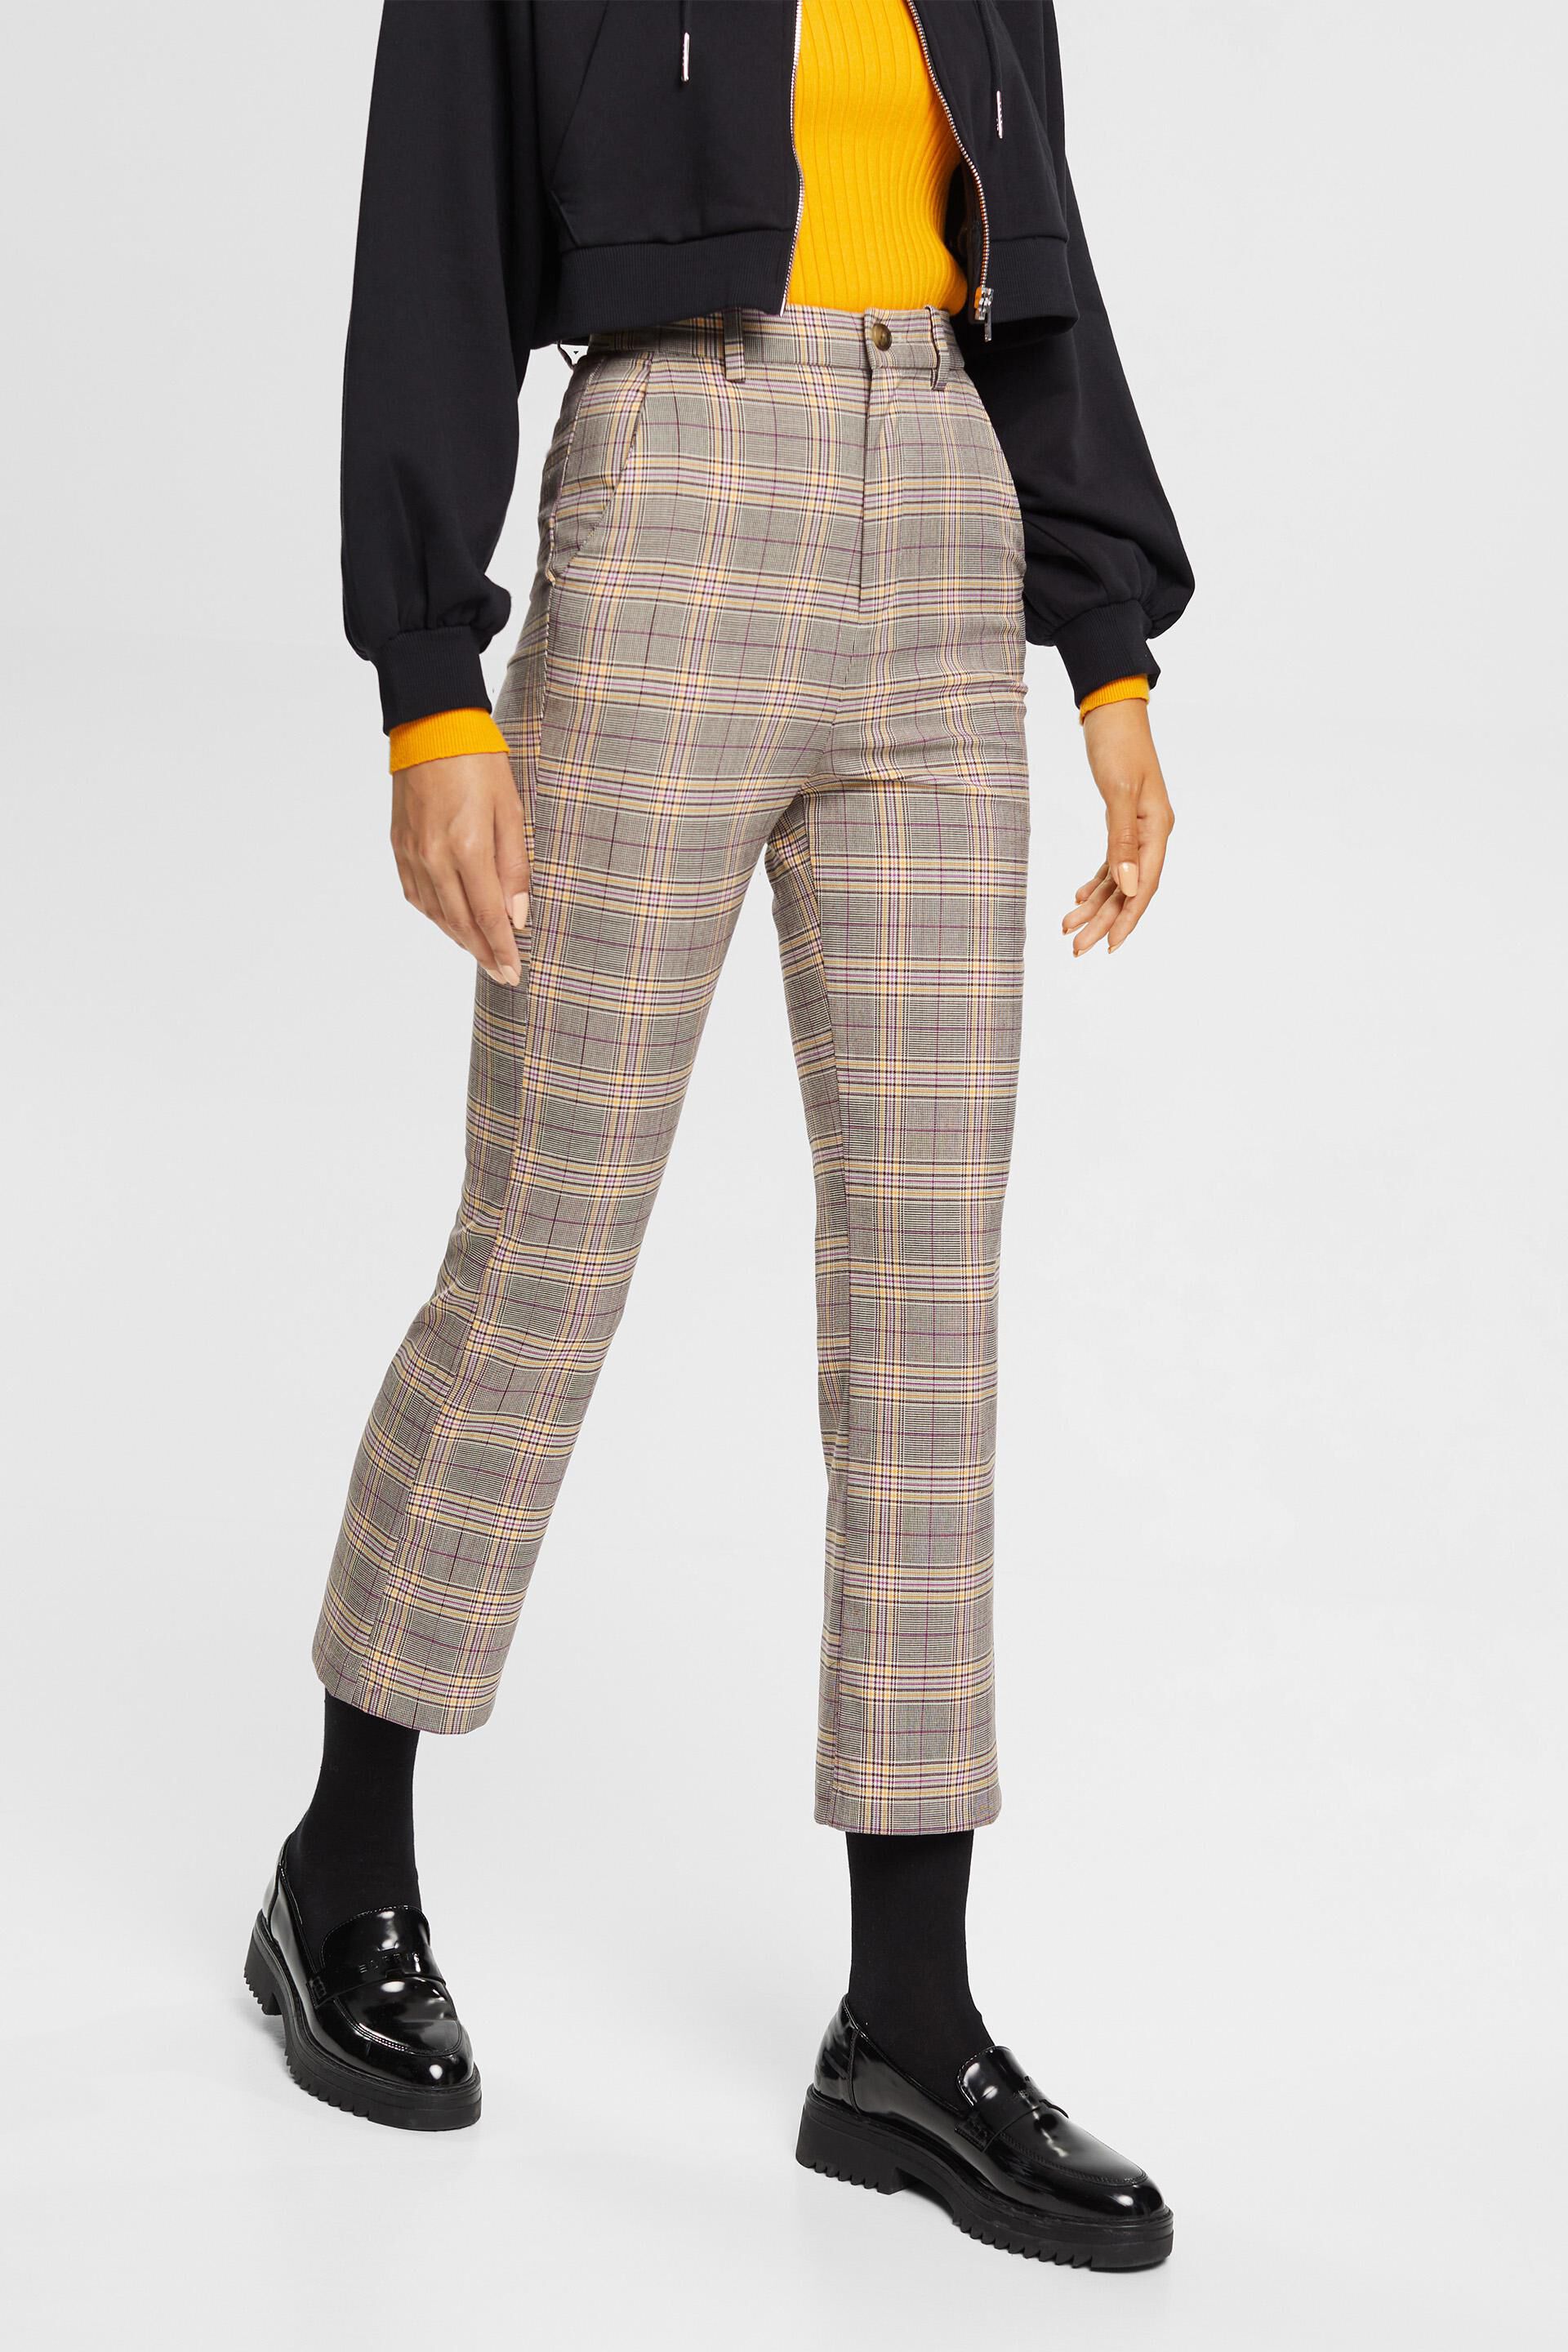 Unique Bargains Junior's Plaid Cropped Trousers Button Tartan Check Work -  Walmart.com